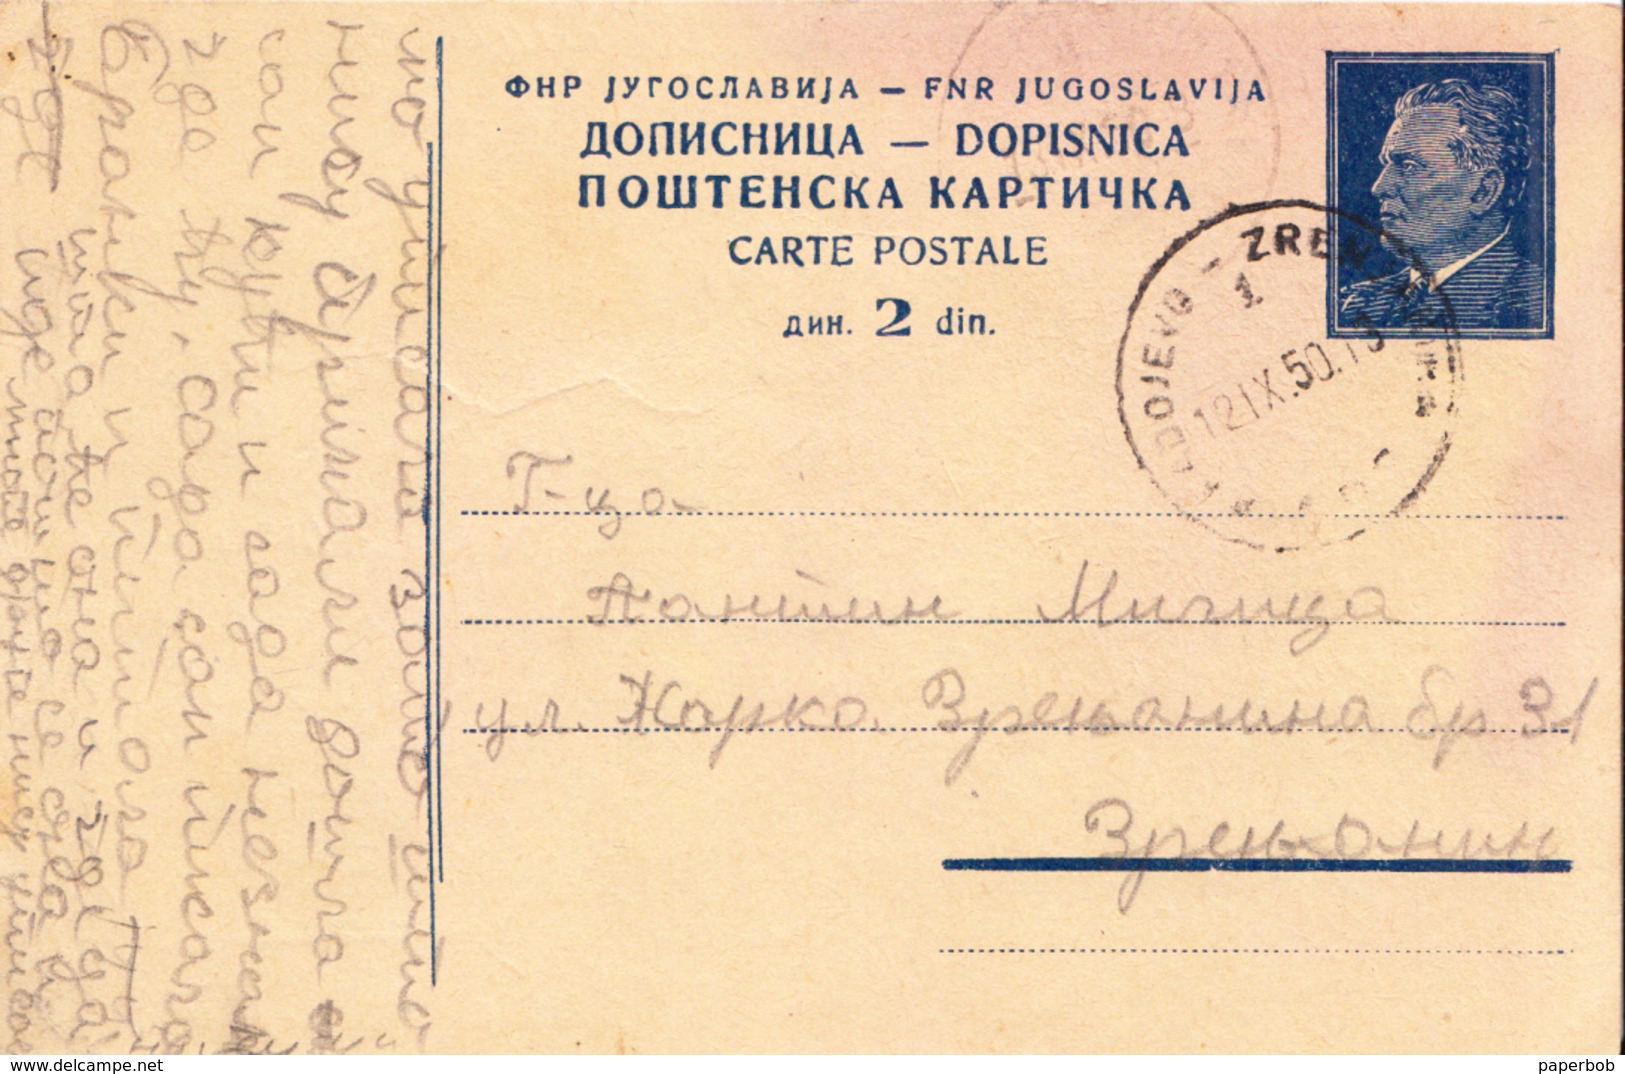 PS WITH RAILWAY CANCEL RADOJEVO-ZRENJANIN - Postal Stationery